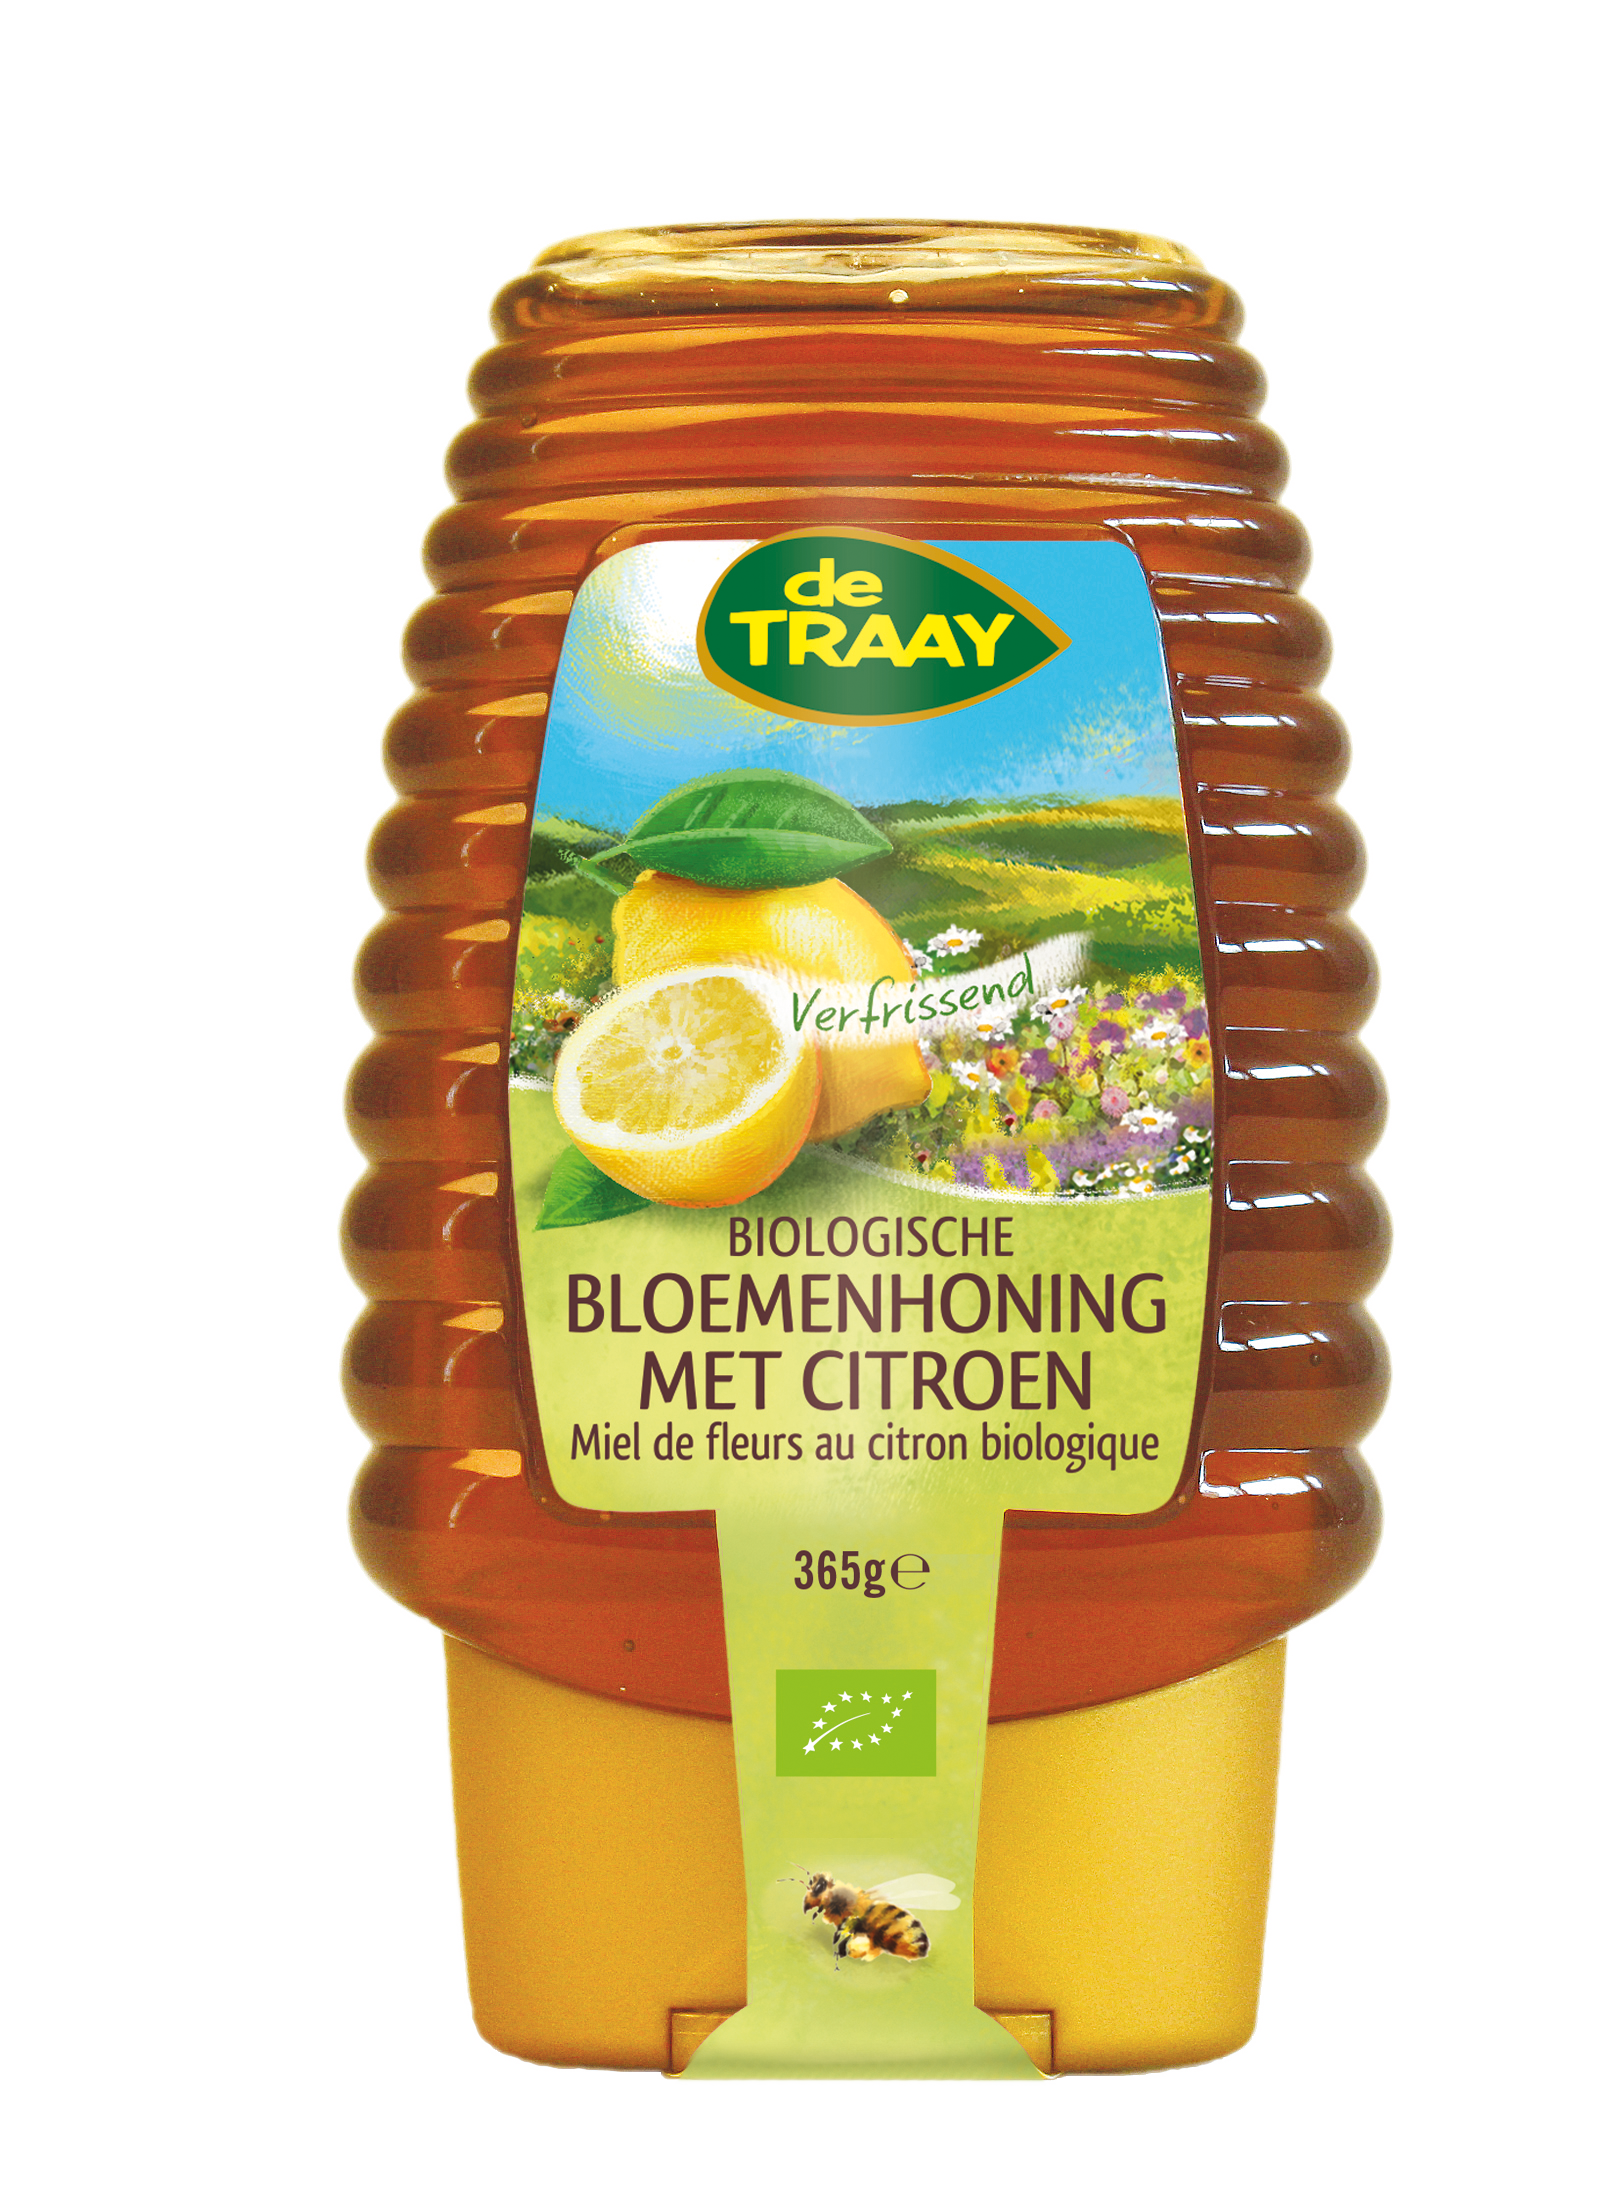 Miel toutes fleurs au citron bio